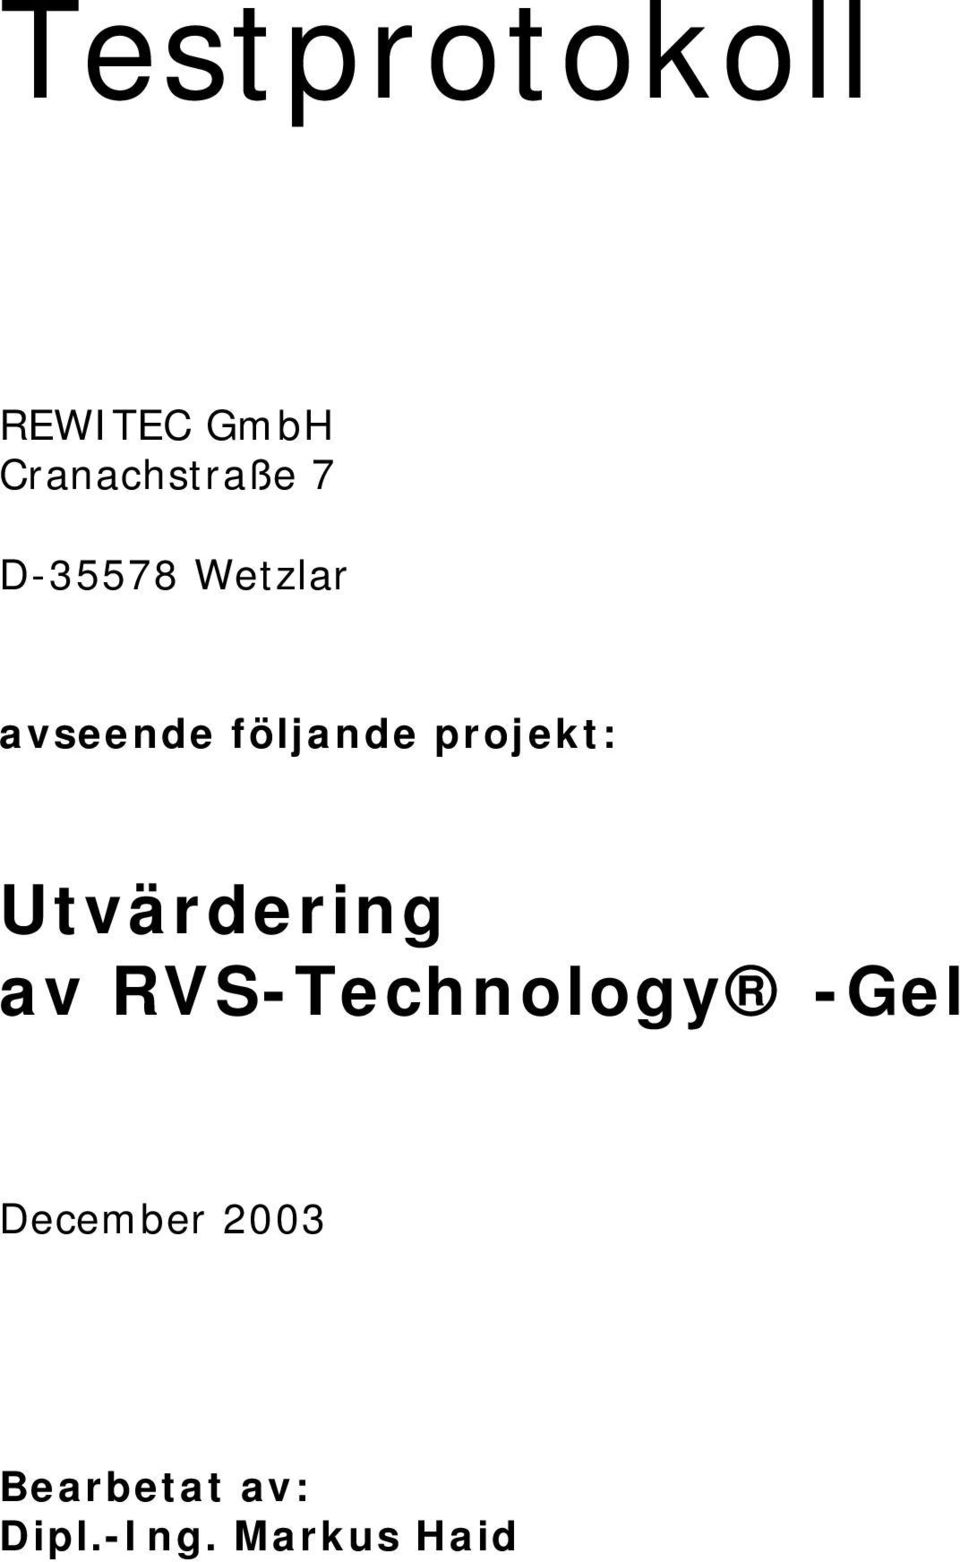 Utvärdering av RVS-Technology -Gel